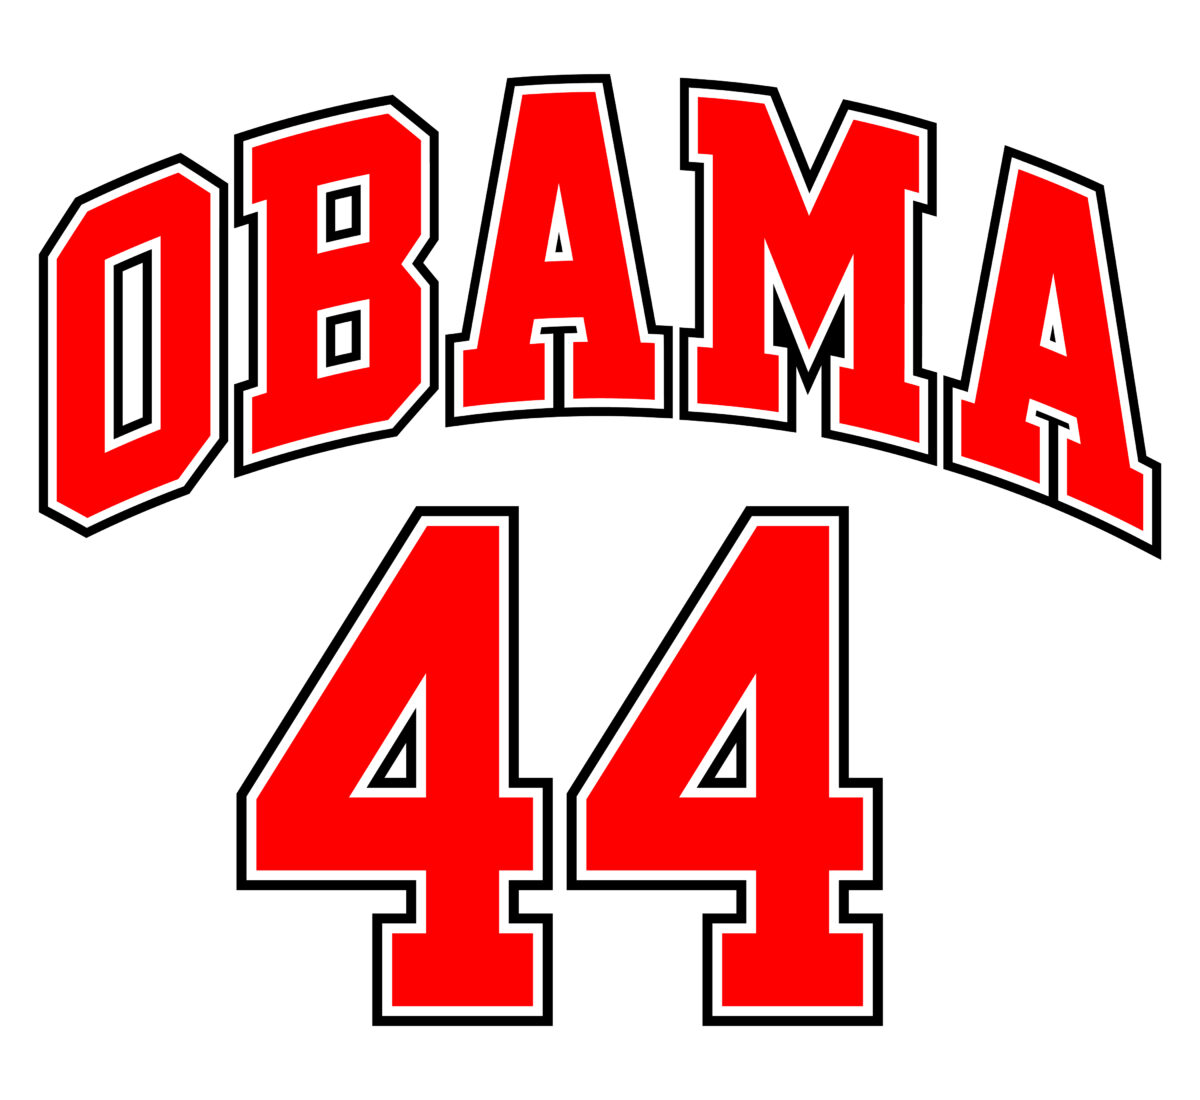 Obama 44 jersey Svg